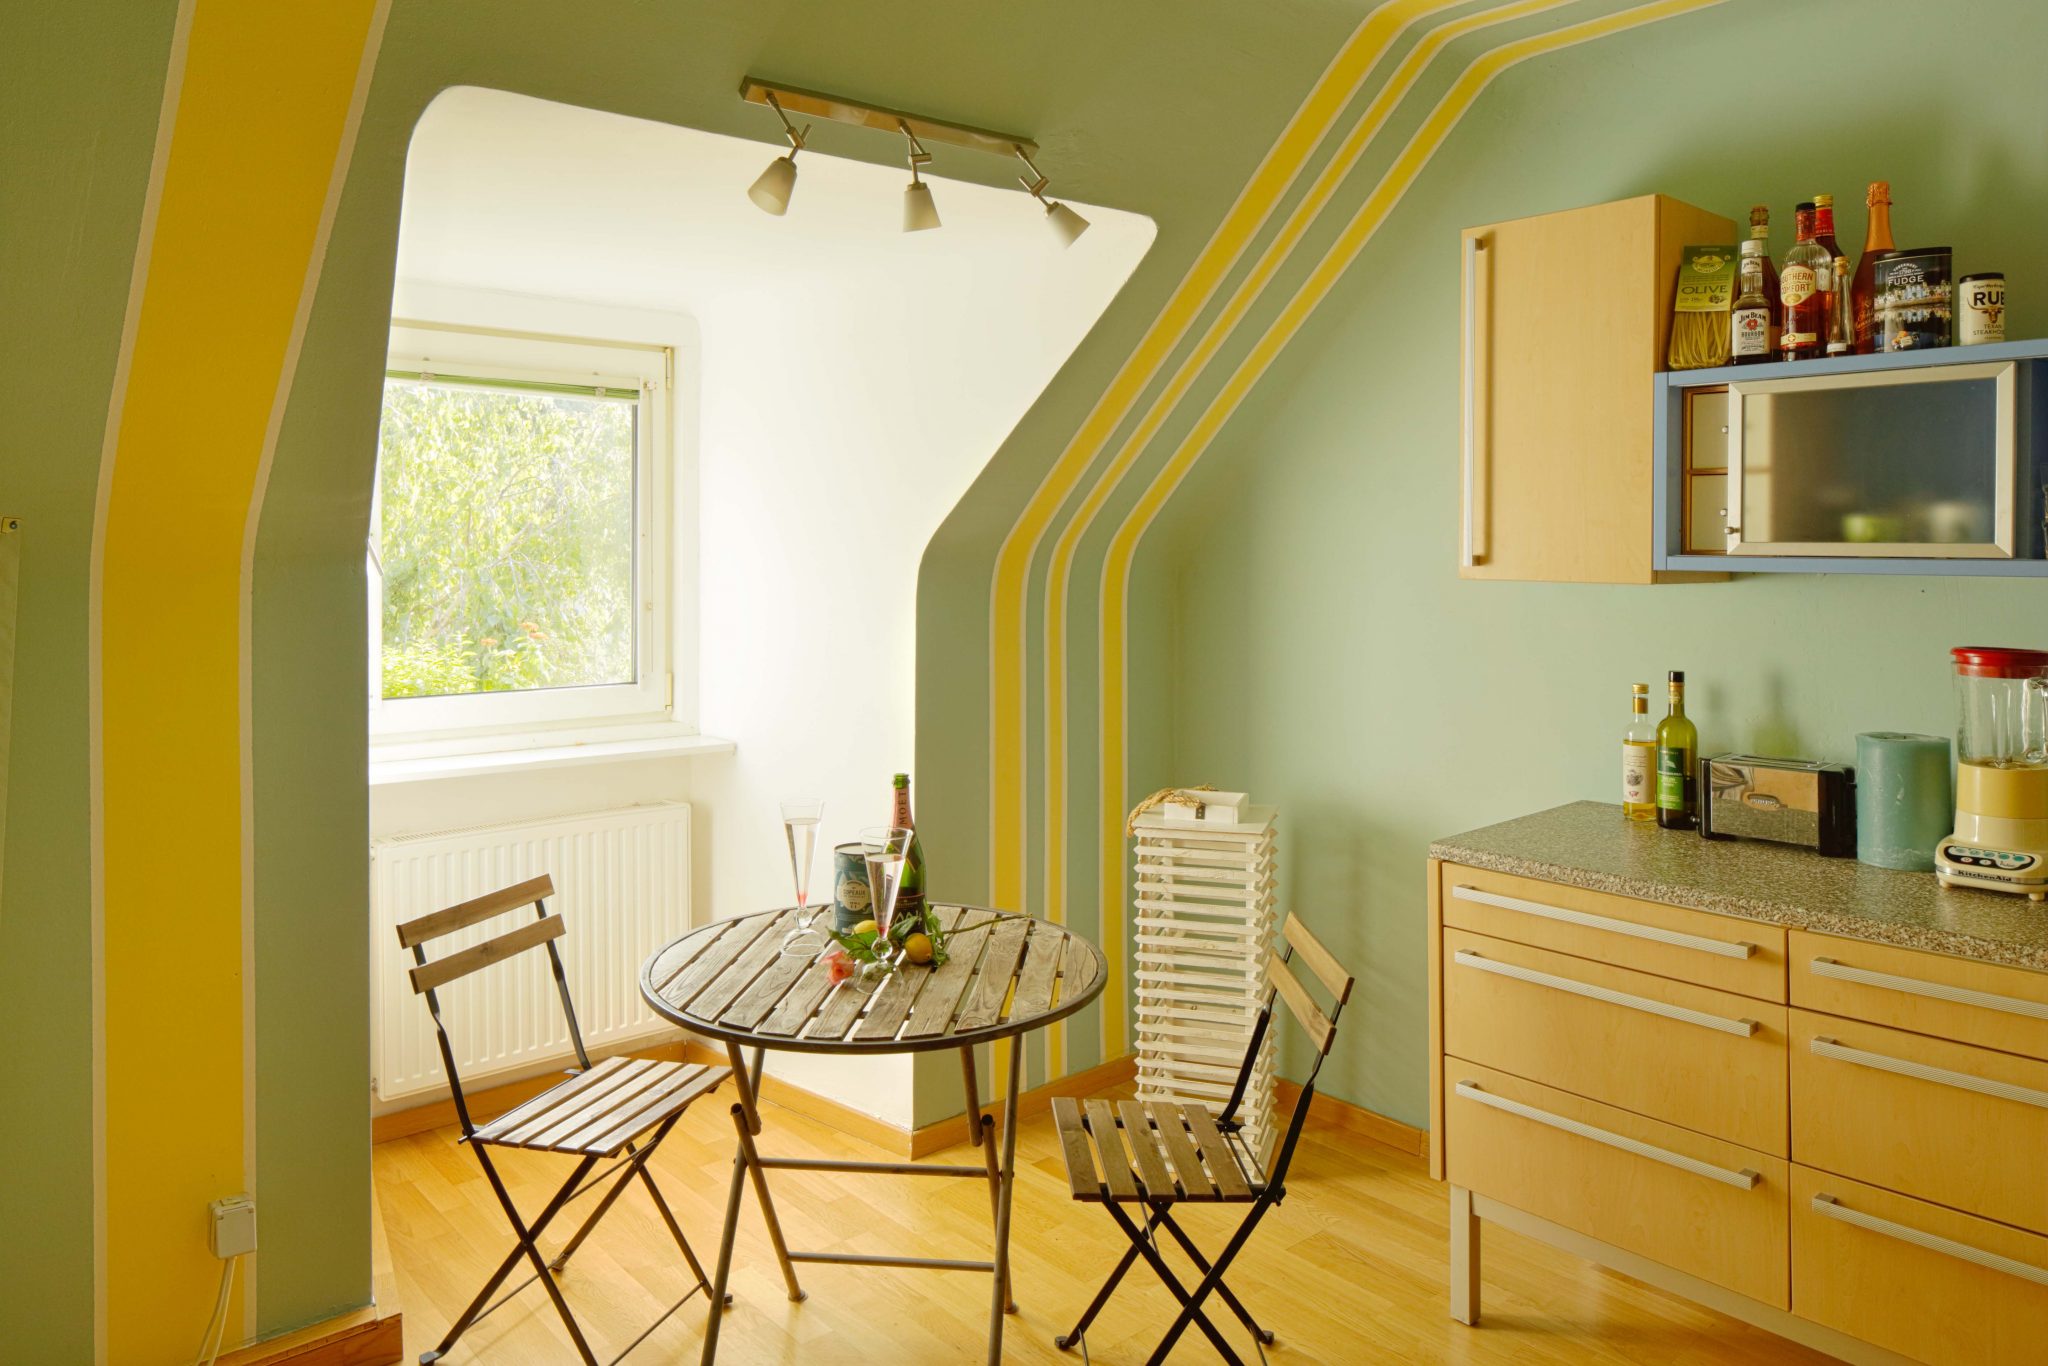 Mittels mit Streifen bestrichenen Wänden inszenierte Dachschräge in Bananengelb und Pistazie, kleiner runder Tisch mit zwei kleinen Stühlen als Interior.